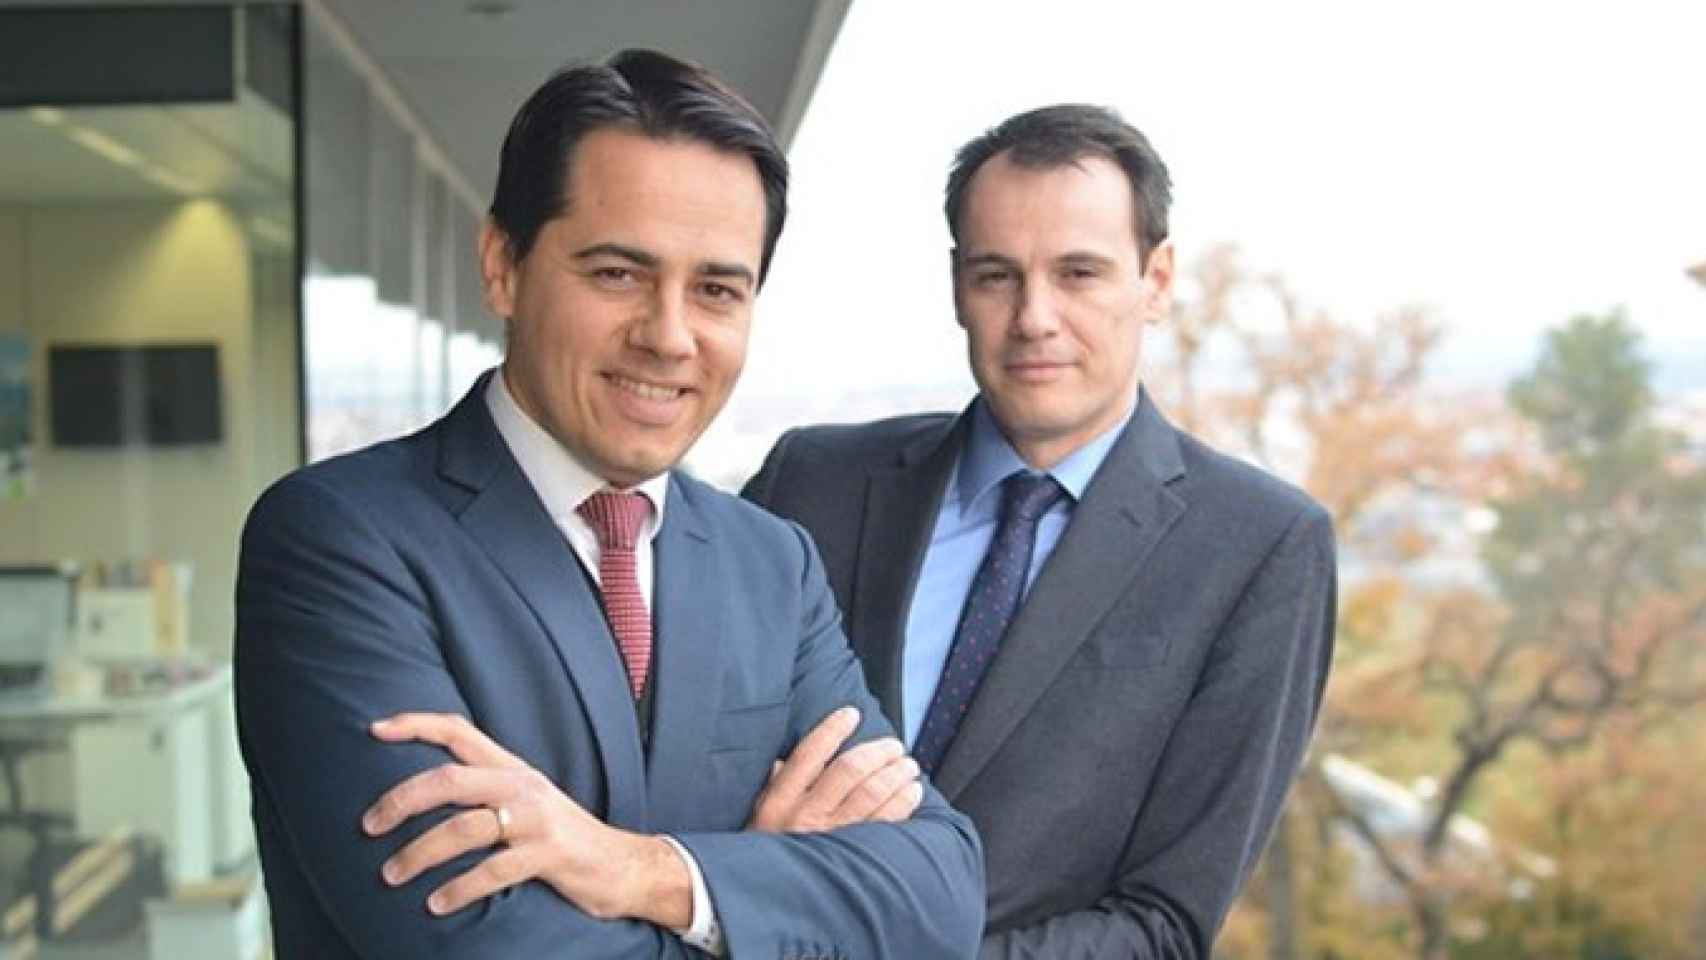 Los socios fundadores y consejeros ejecutivos de la compañía, Miquel Àngel Bonachera y Sergi Audivert / AB-BIOTICS